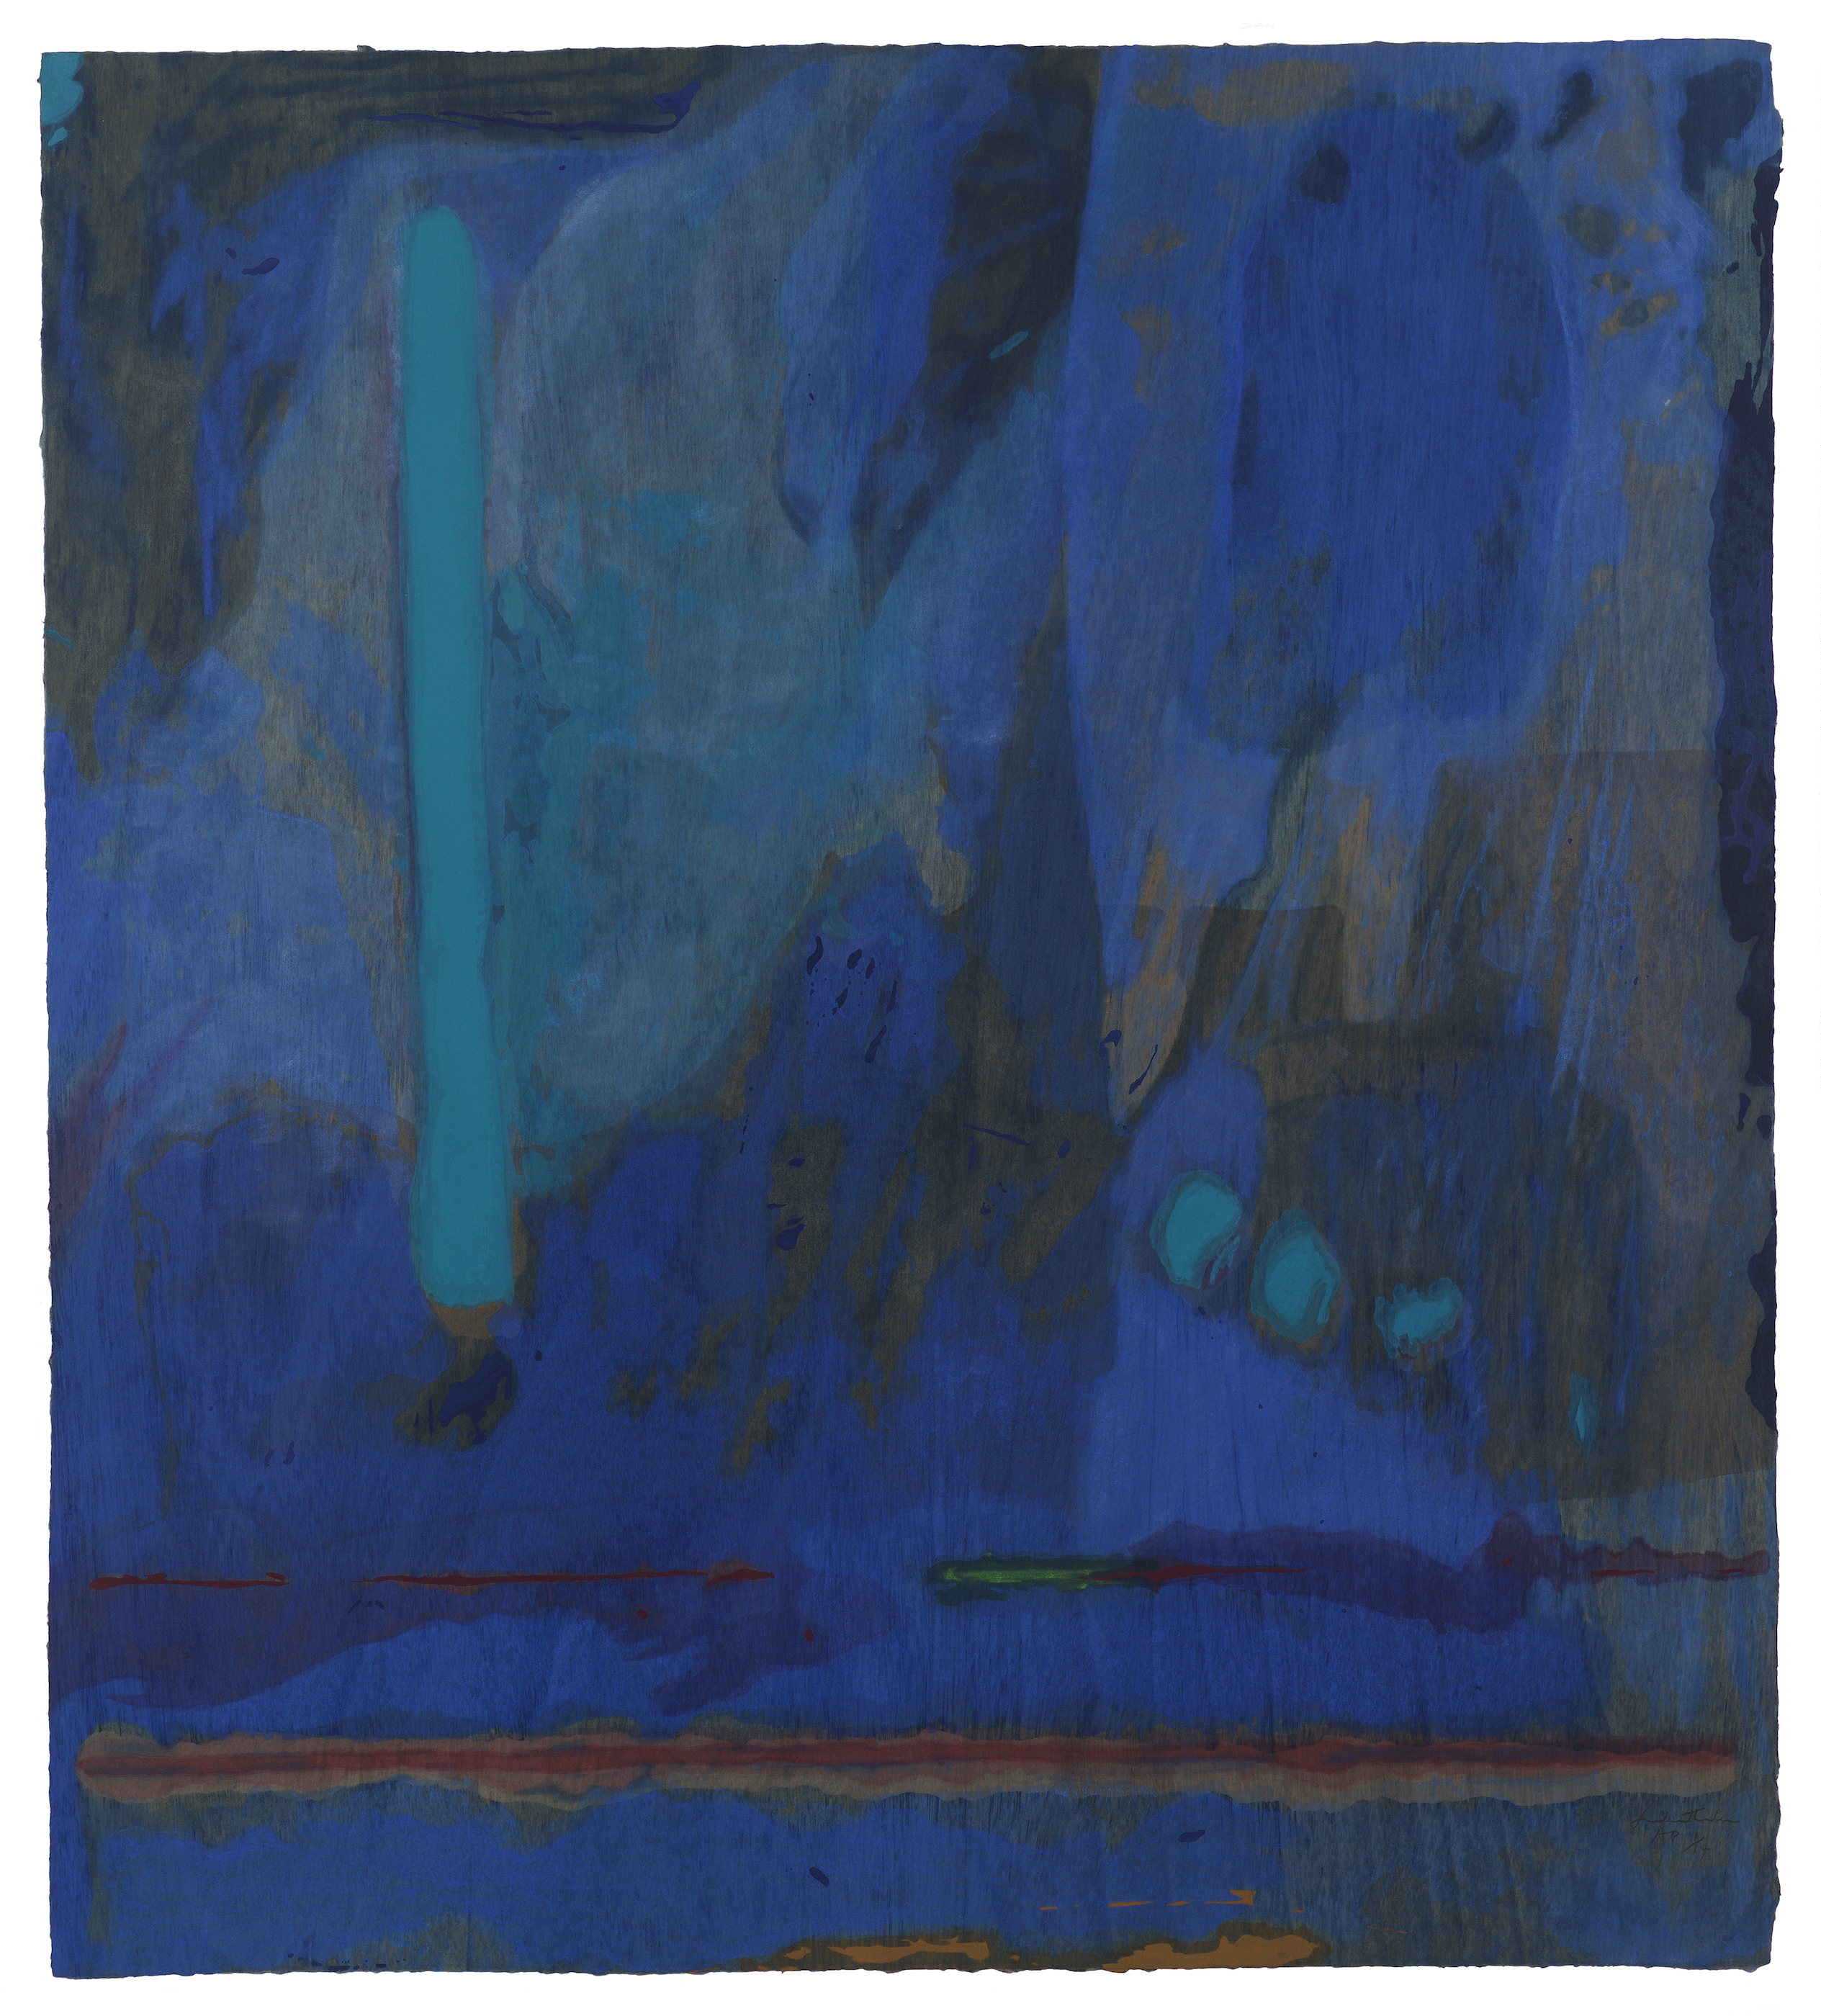 源氏物語 １ by Helen Frankenthaler - 1998年 - 106.7 x 119.4 cm 